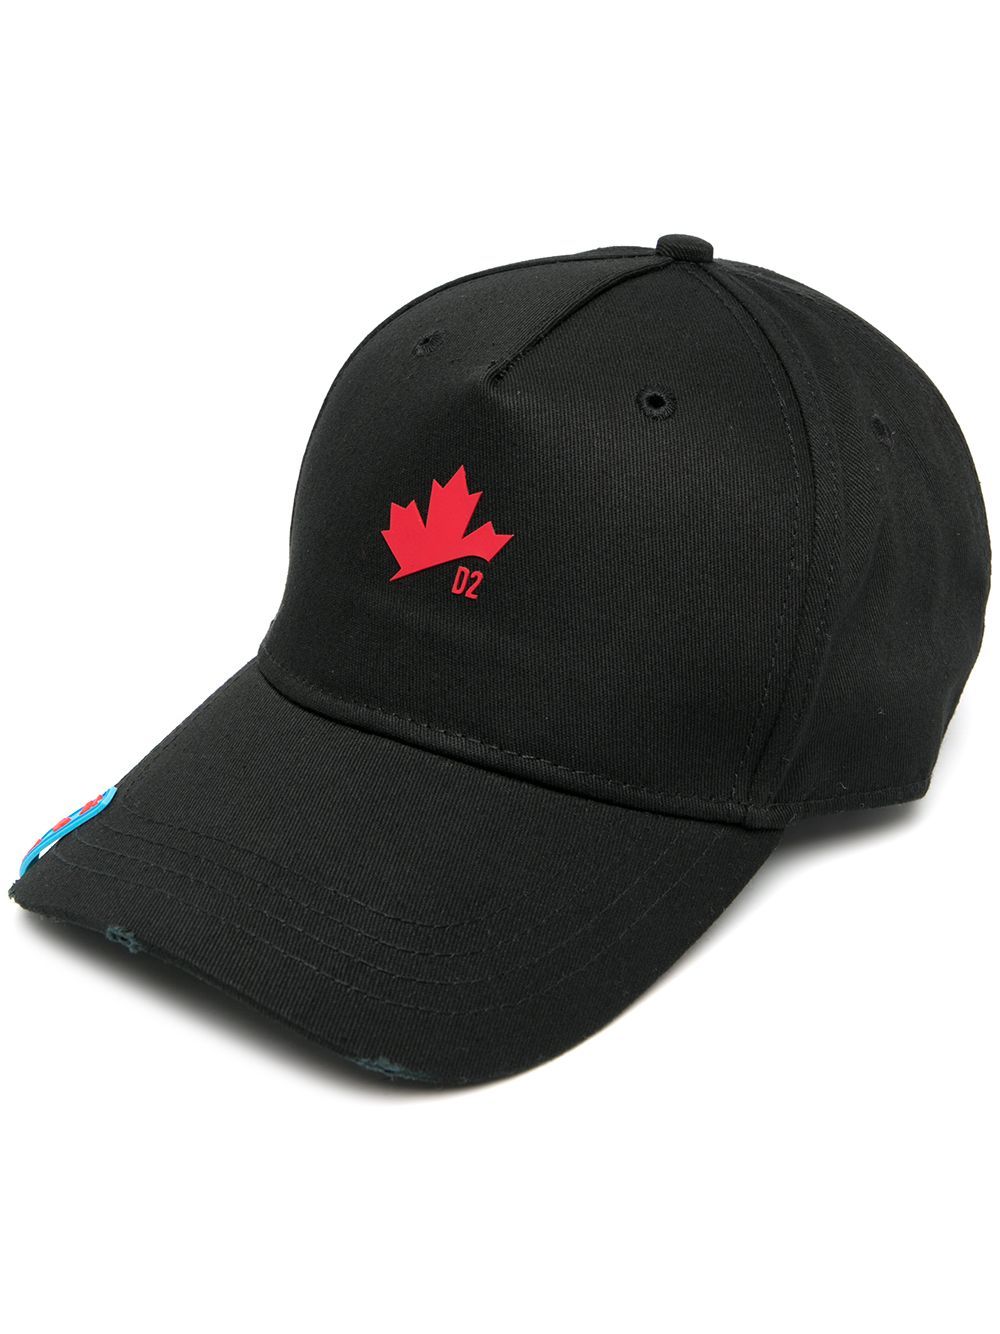 DSQUARED2 Maple Leaf Cap Black/Red - MAISONDEFASHION.COM